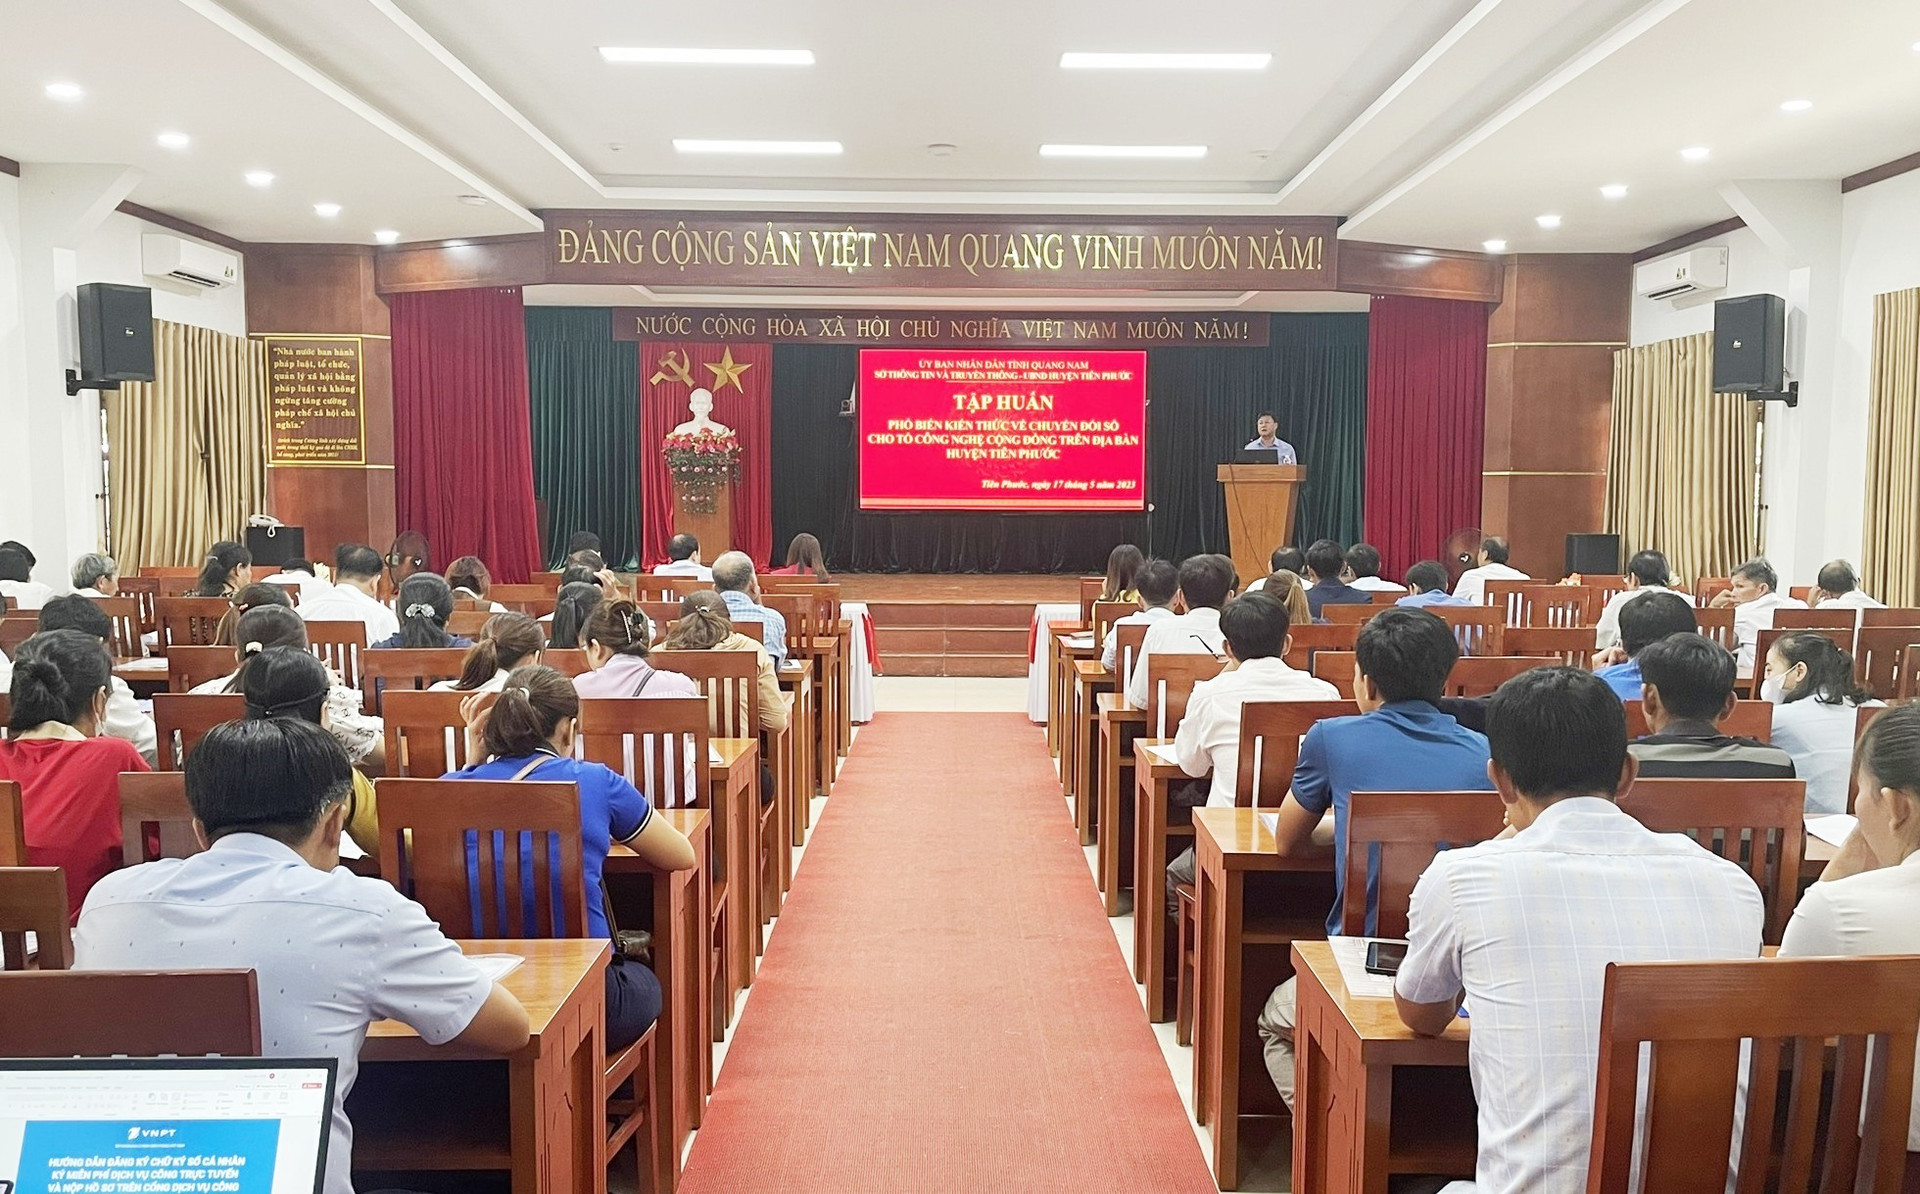 Hơn 100 thành viên của 85 tổ công nghệ cộng đồng trên địa bàn huyện Tiên Phước tham gia tập huấn sáng ngày 17/5. Ảnh:N.P